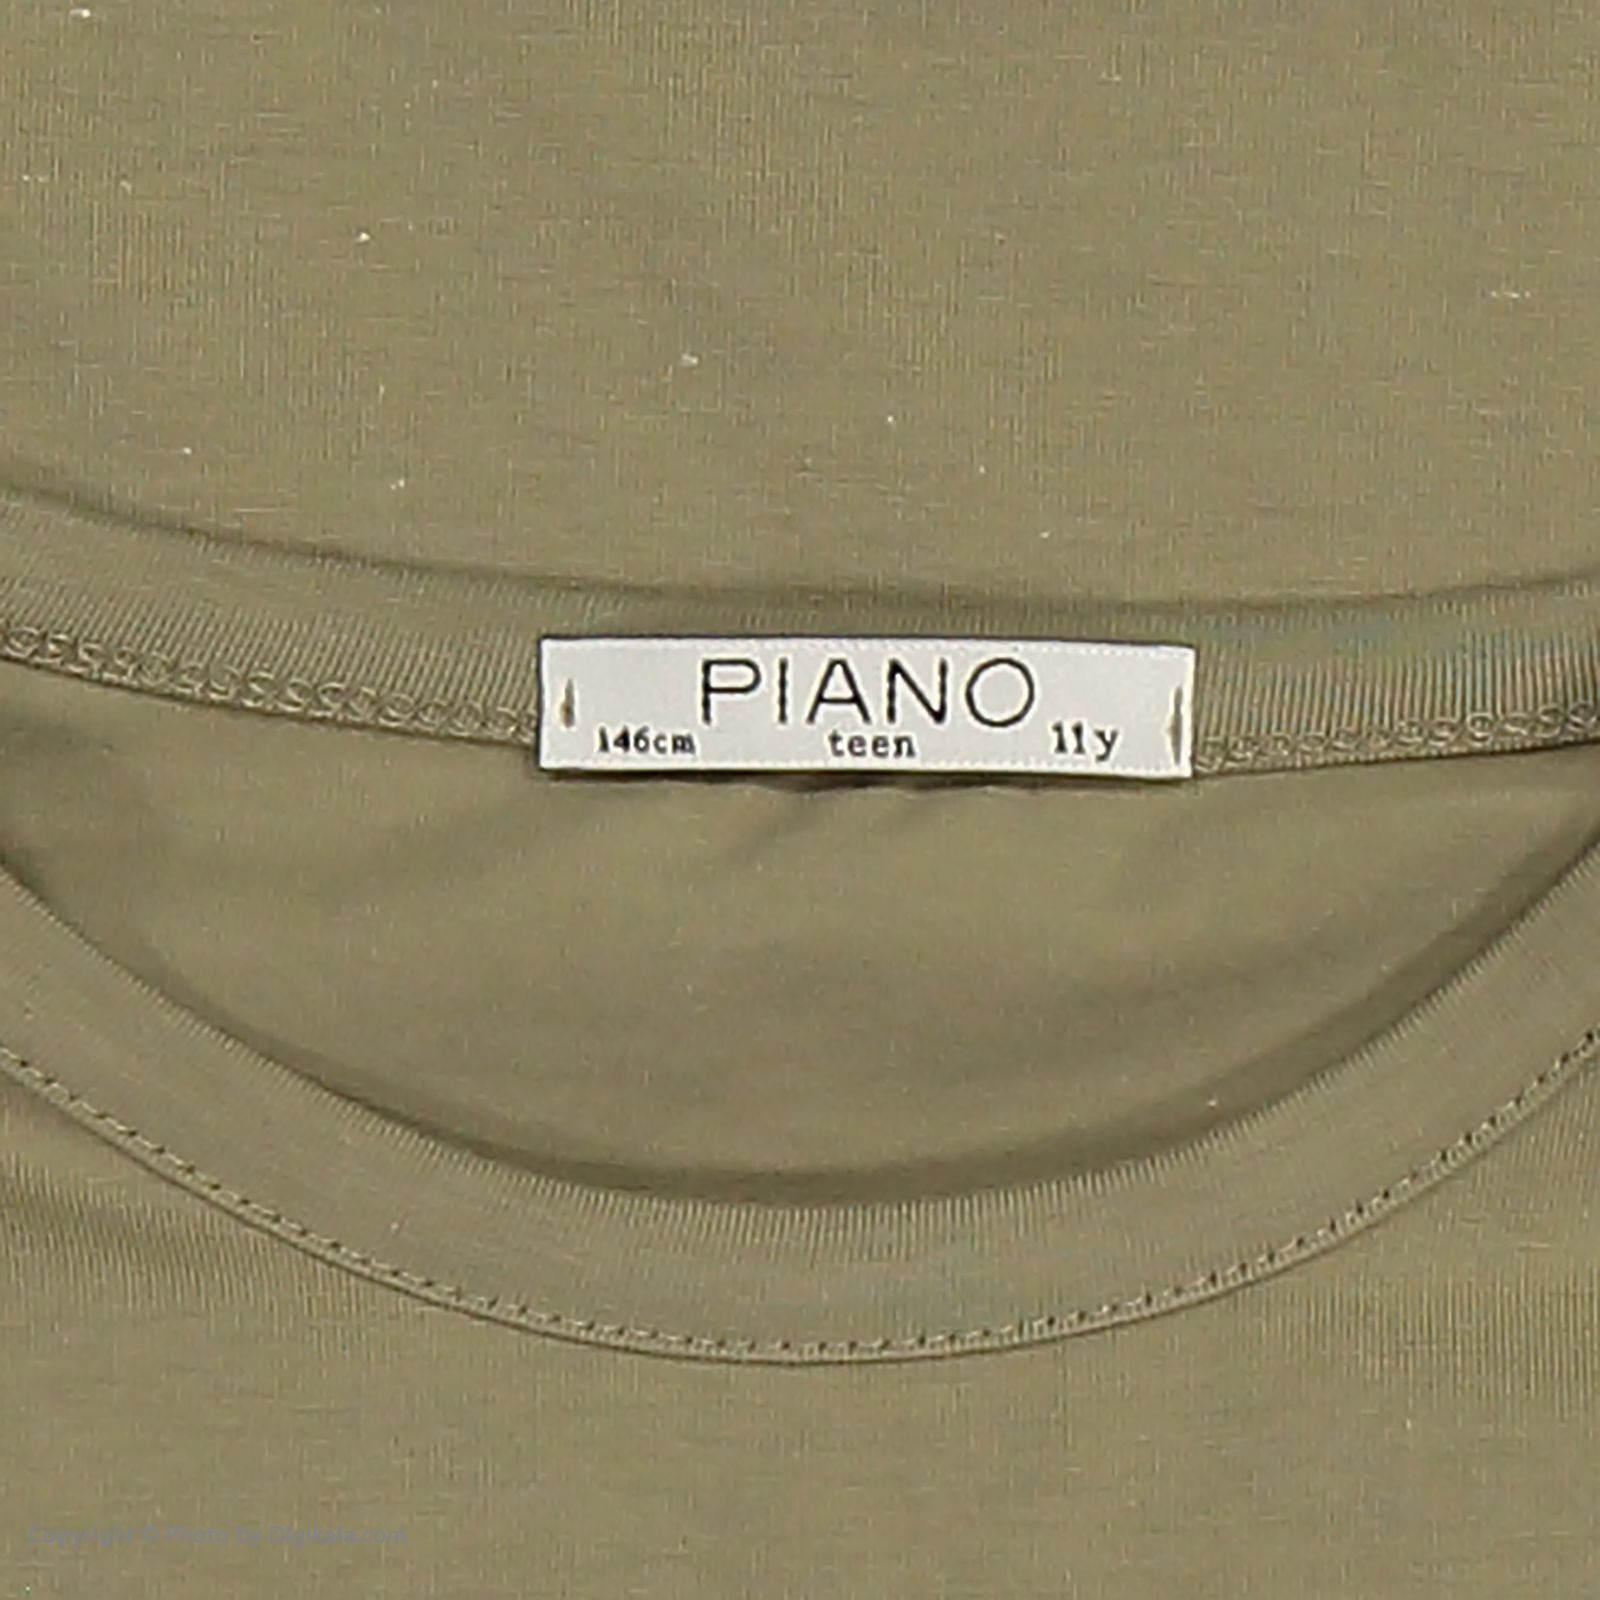 تی شرت دخترانه پیانو مدل 1009009801047-47 -  - 5